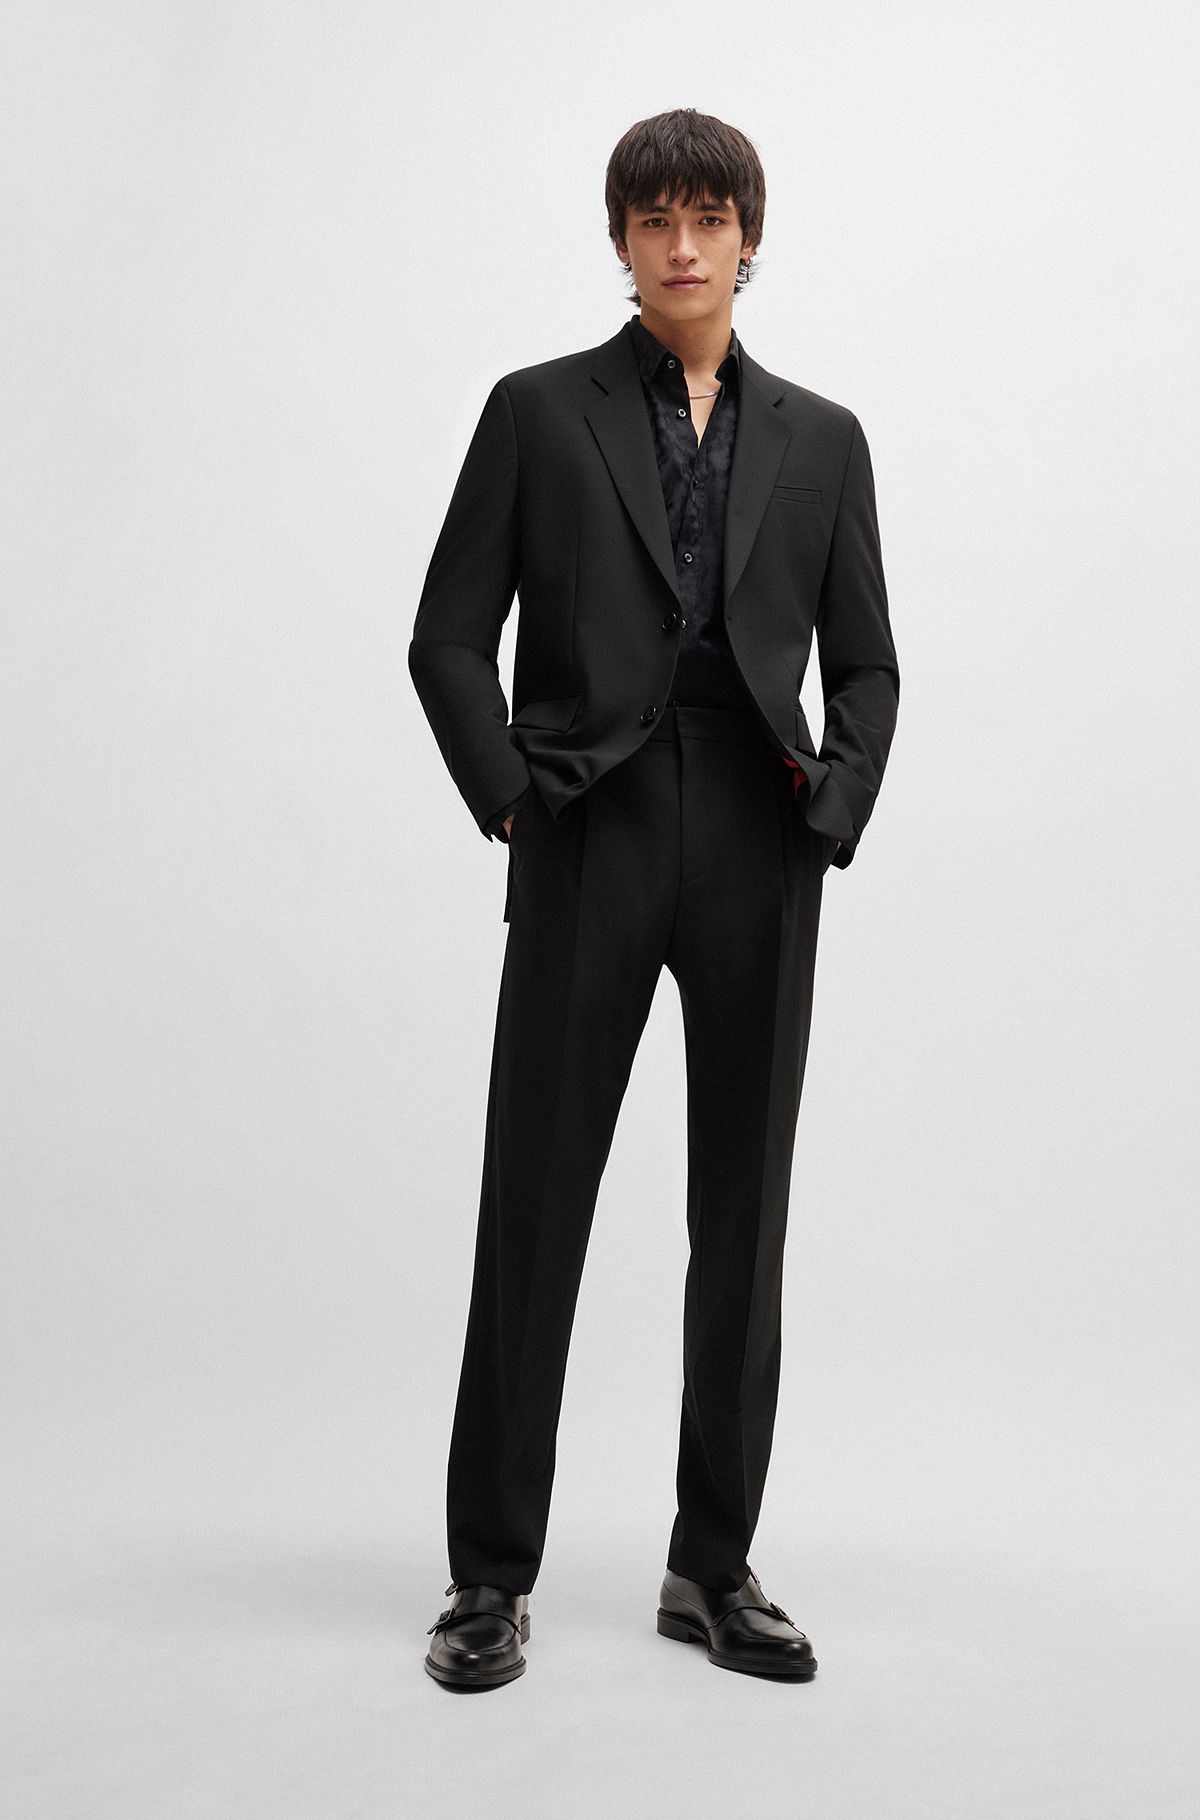 Elegant Suits for Men  Men's Designer Suits by HUGO BOSS